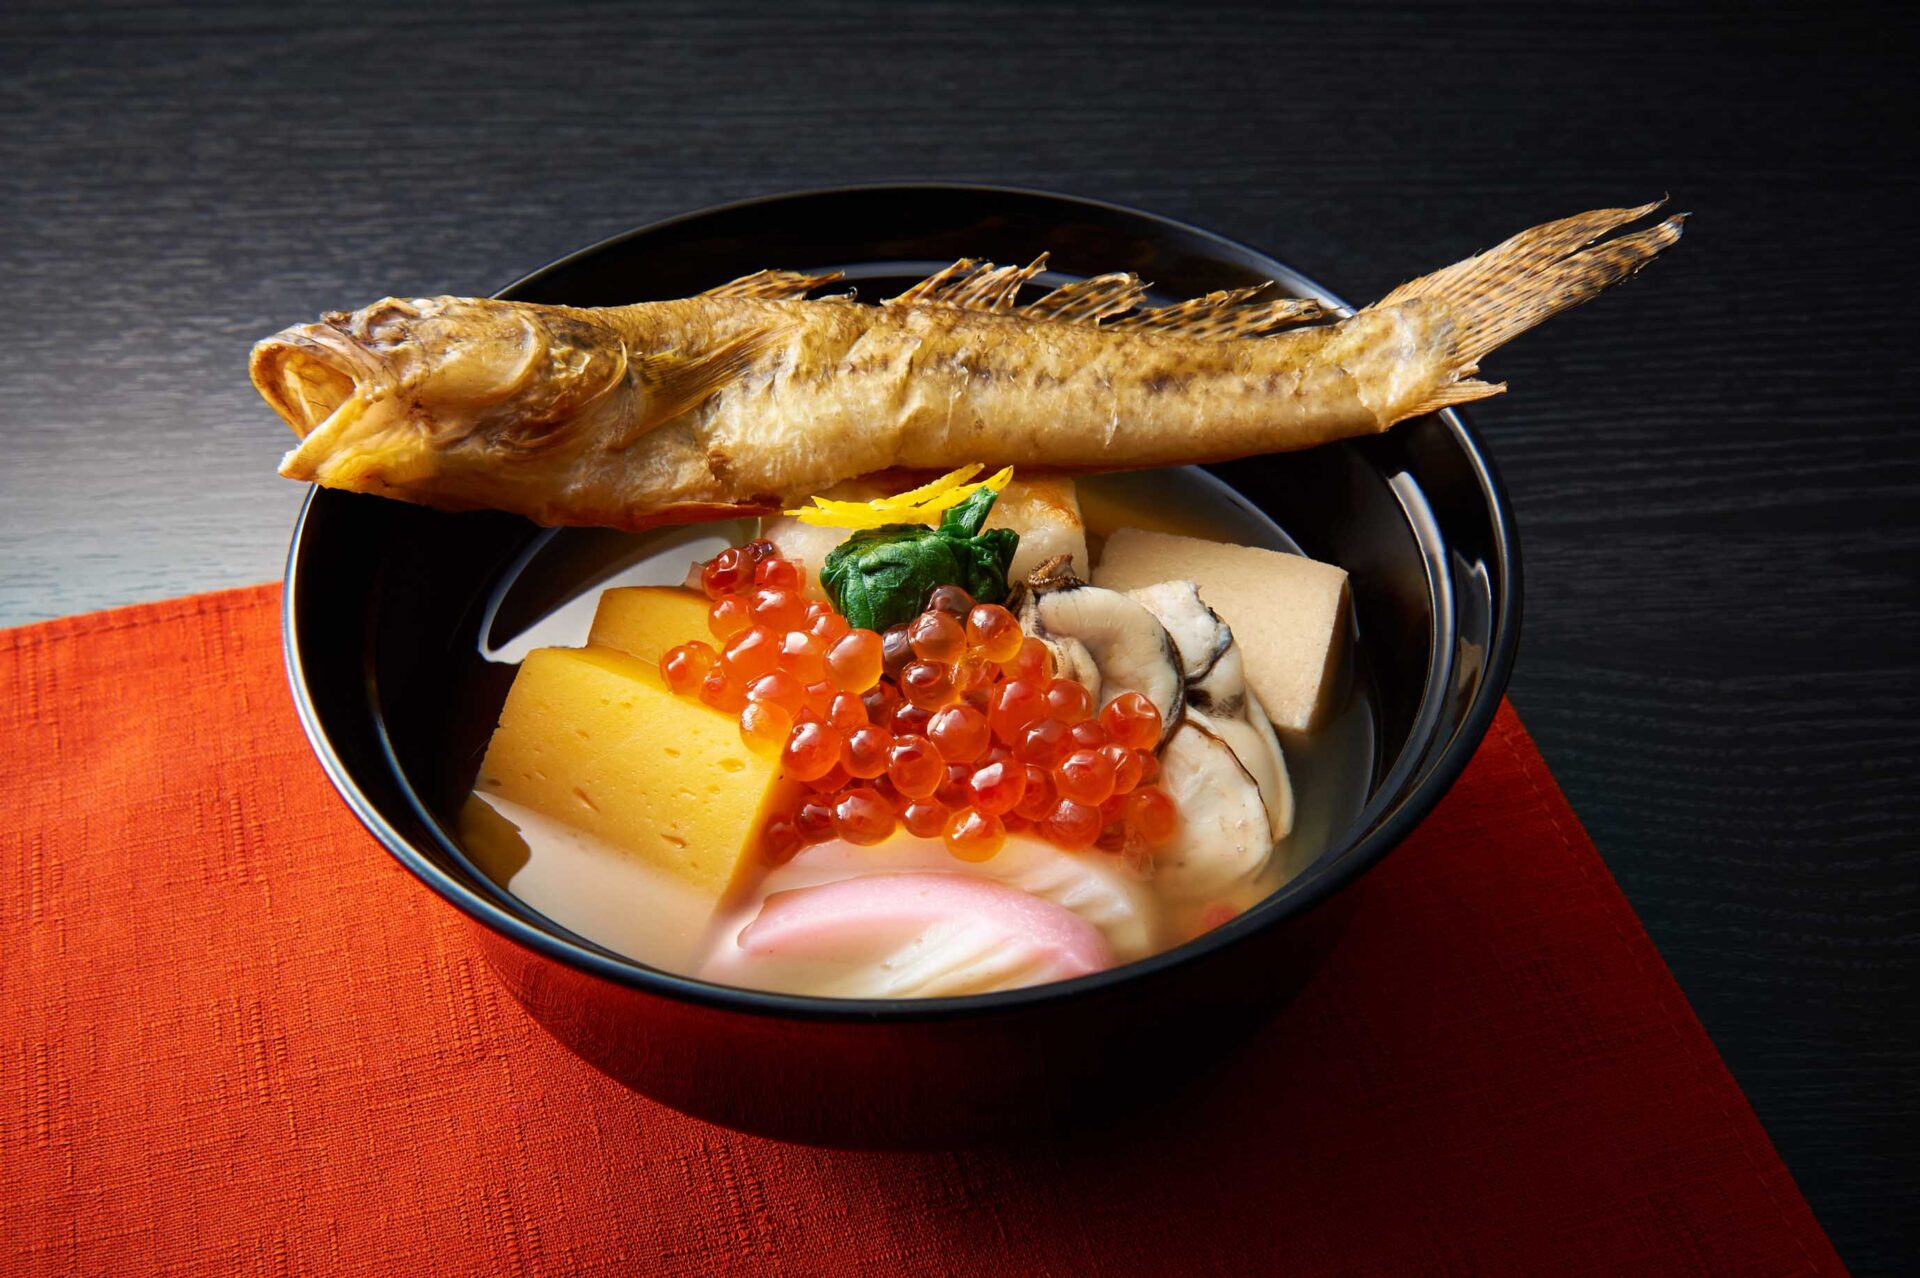 動画視聴講座 世界に誇る日本の魚食文化を味わう 第6回 知ればおいしい 魚のことば 令和アカデミー倶楽部